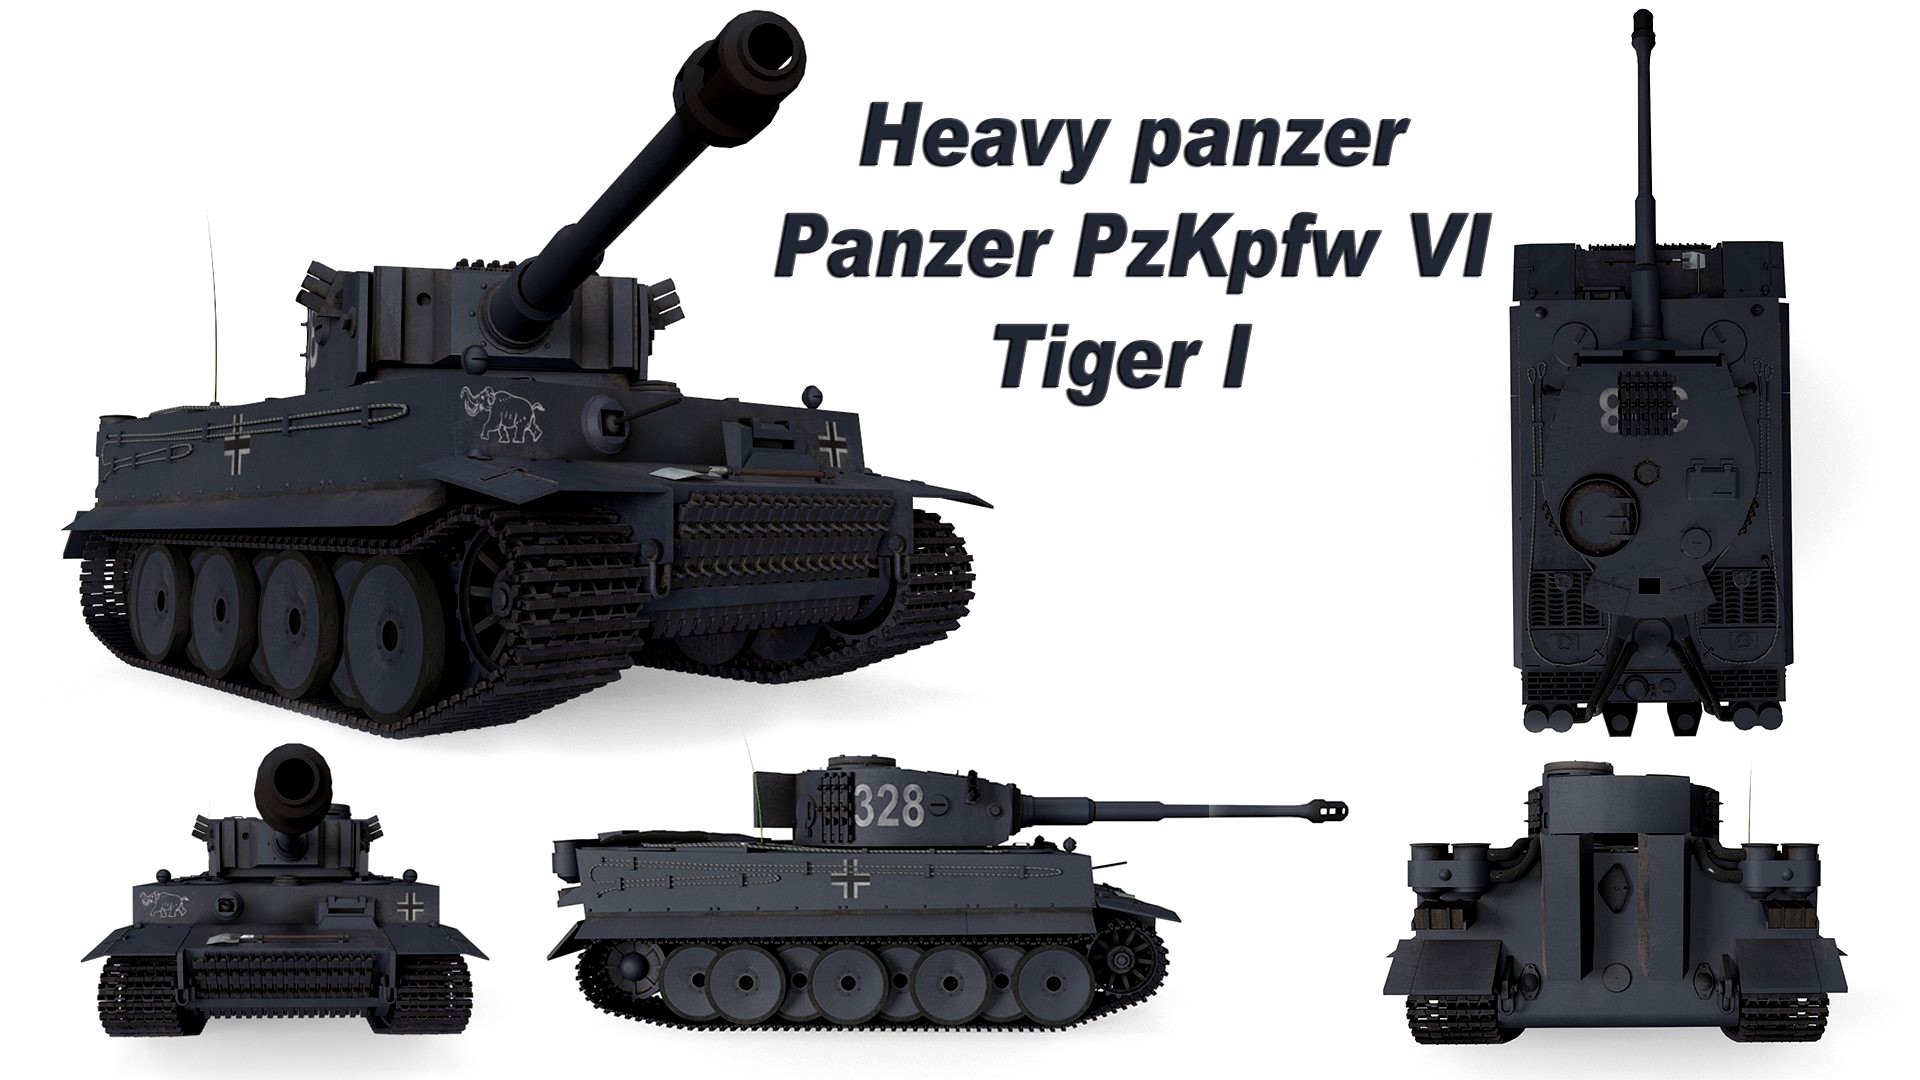 Panzer PzKpfw VI Tiger I